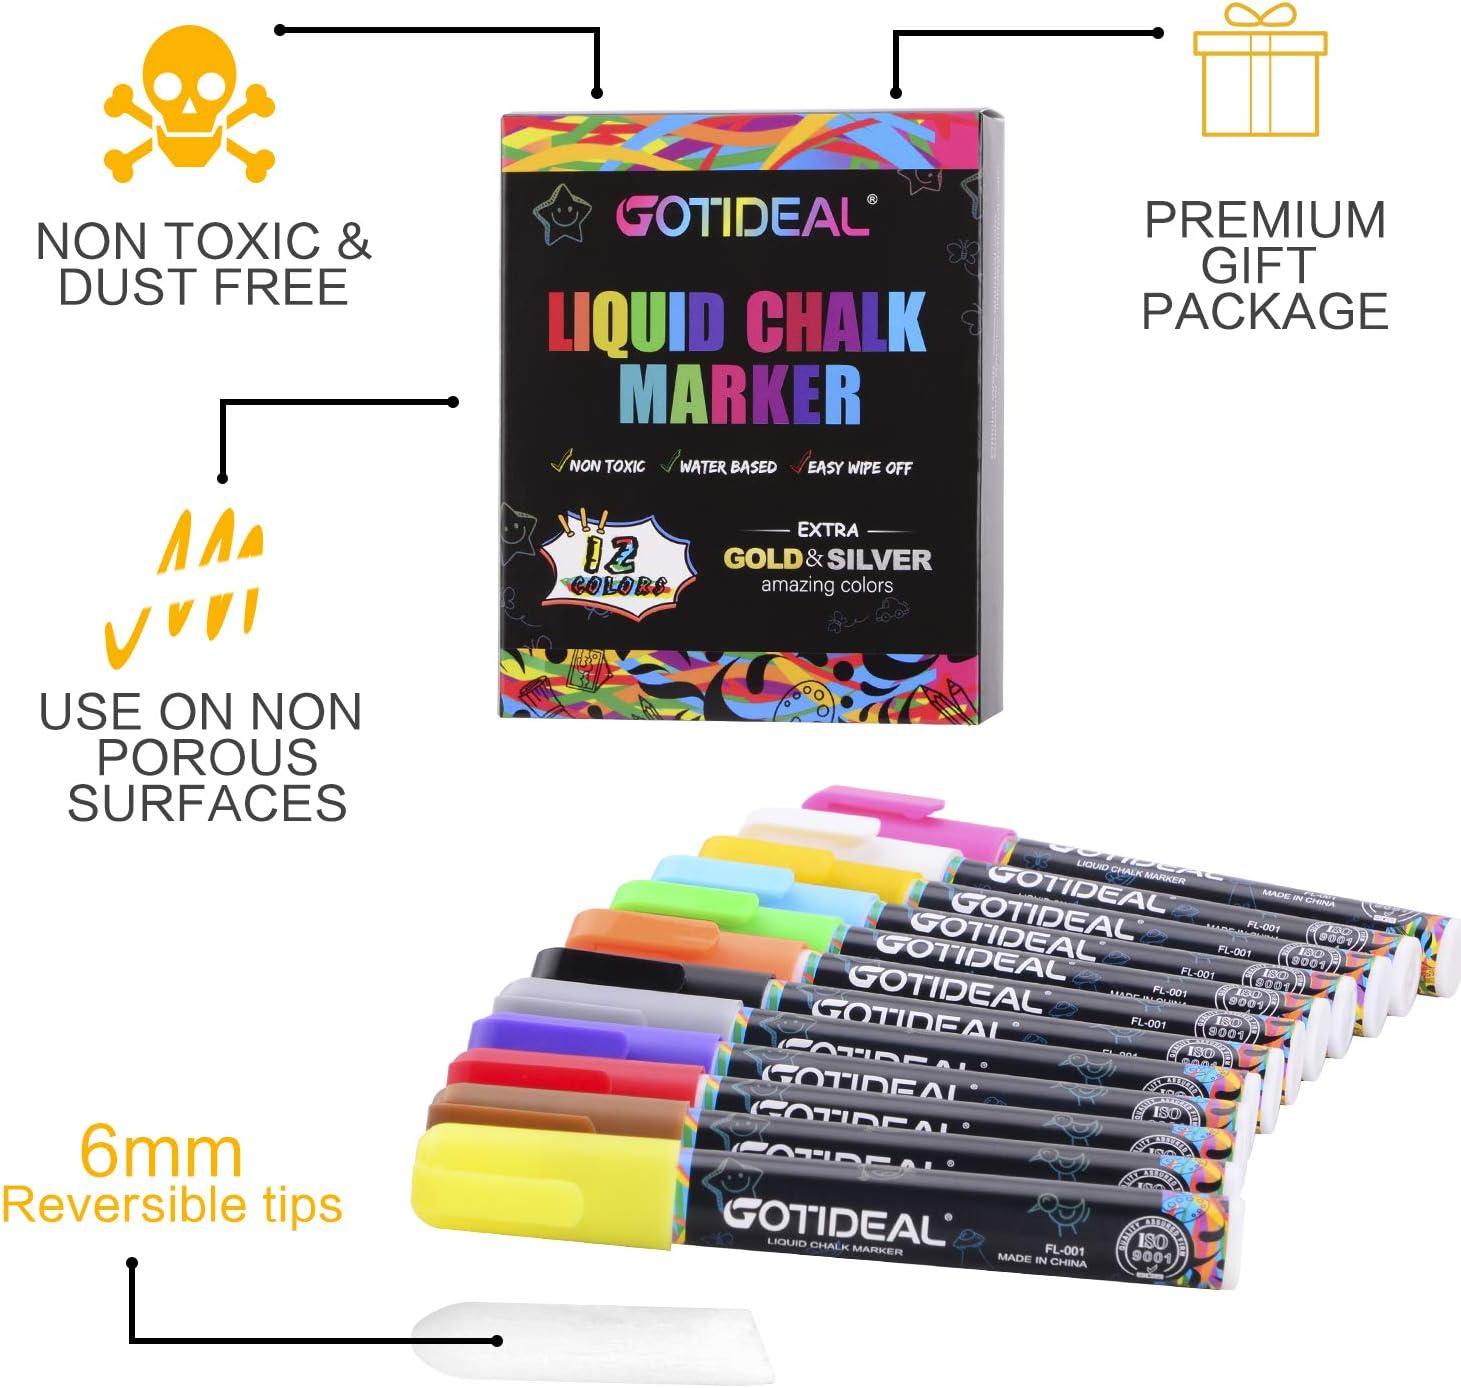 GOTIDEAL Liquid Chalk Markers 12 Colors Premium Window Chalkboard